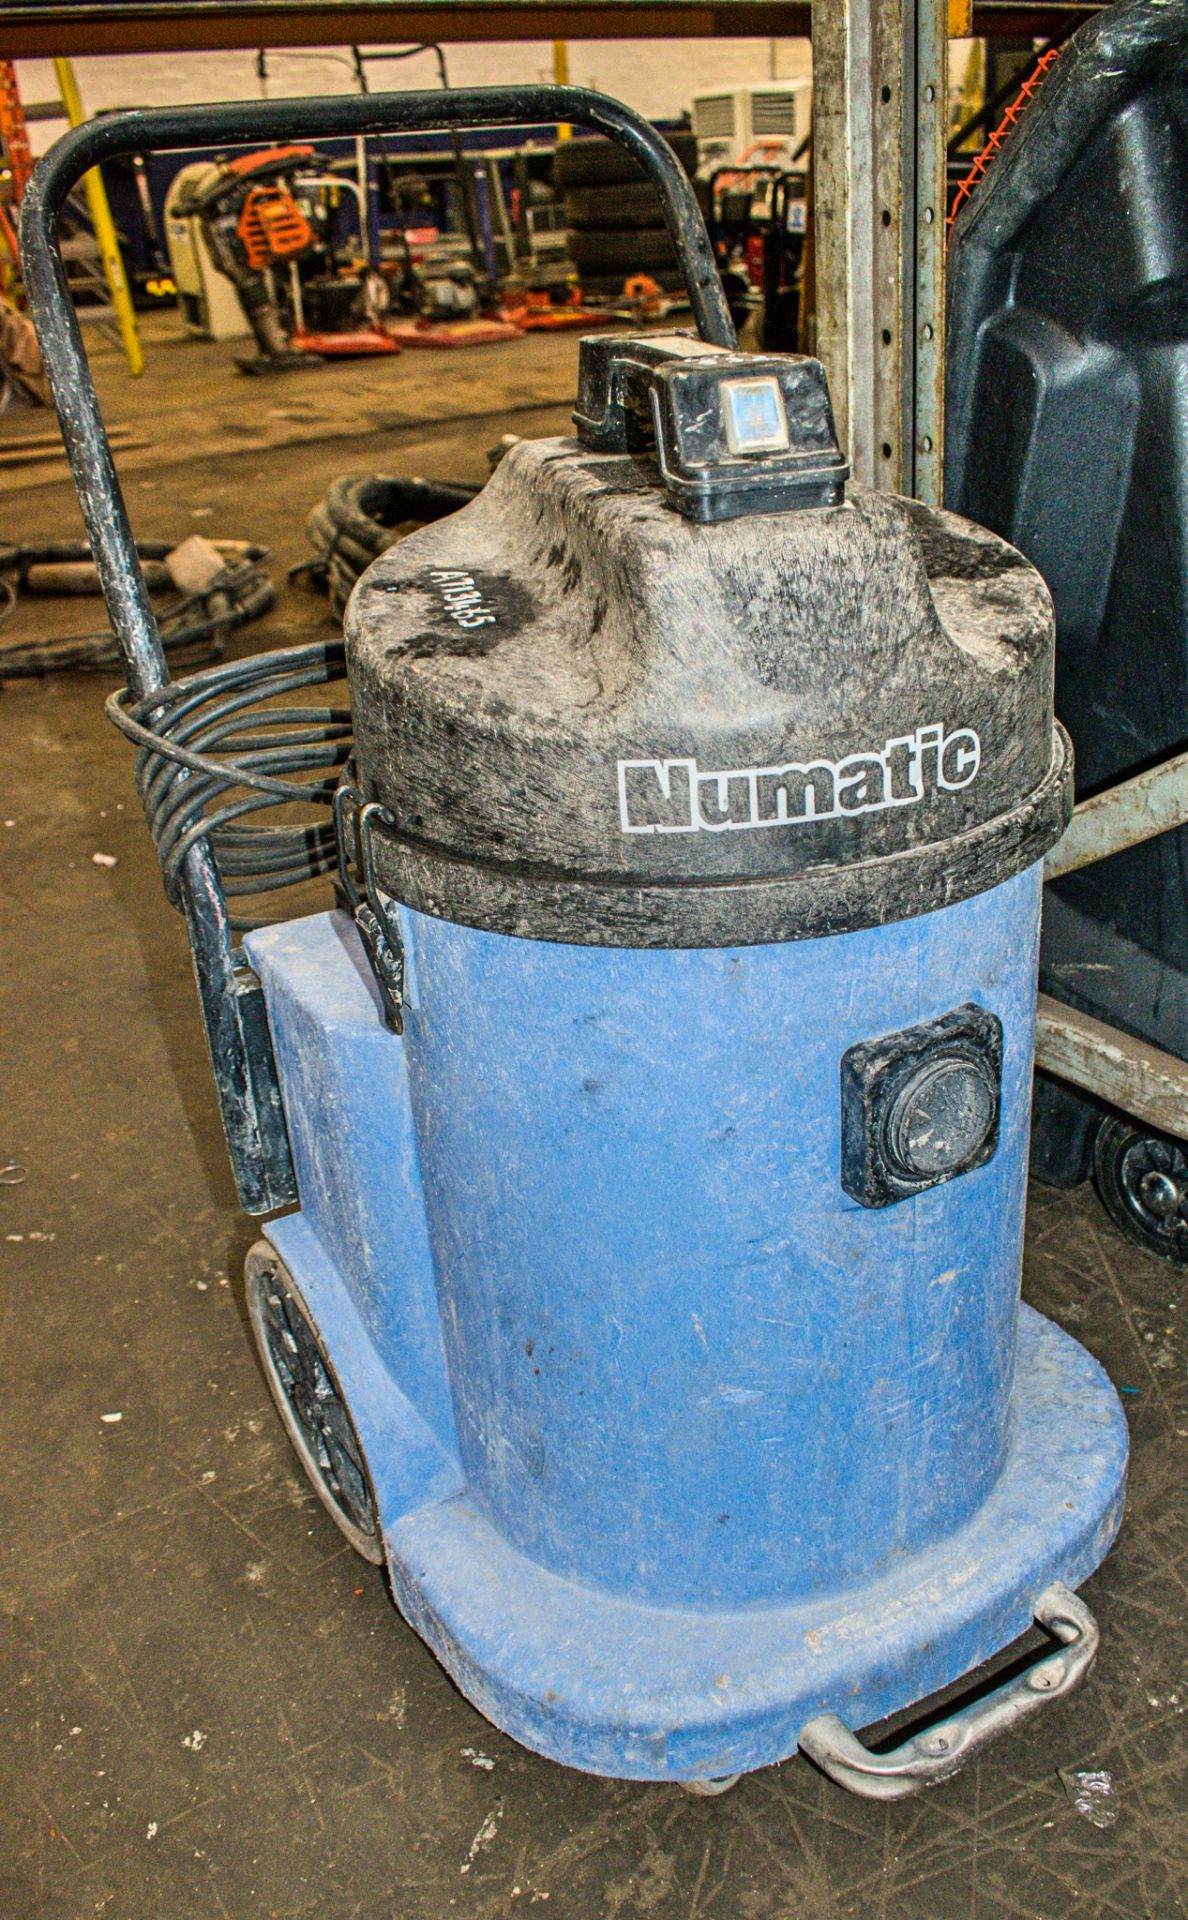 Numatic 110v vacuum cleaner A713465